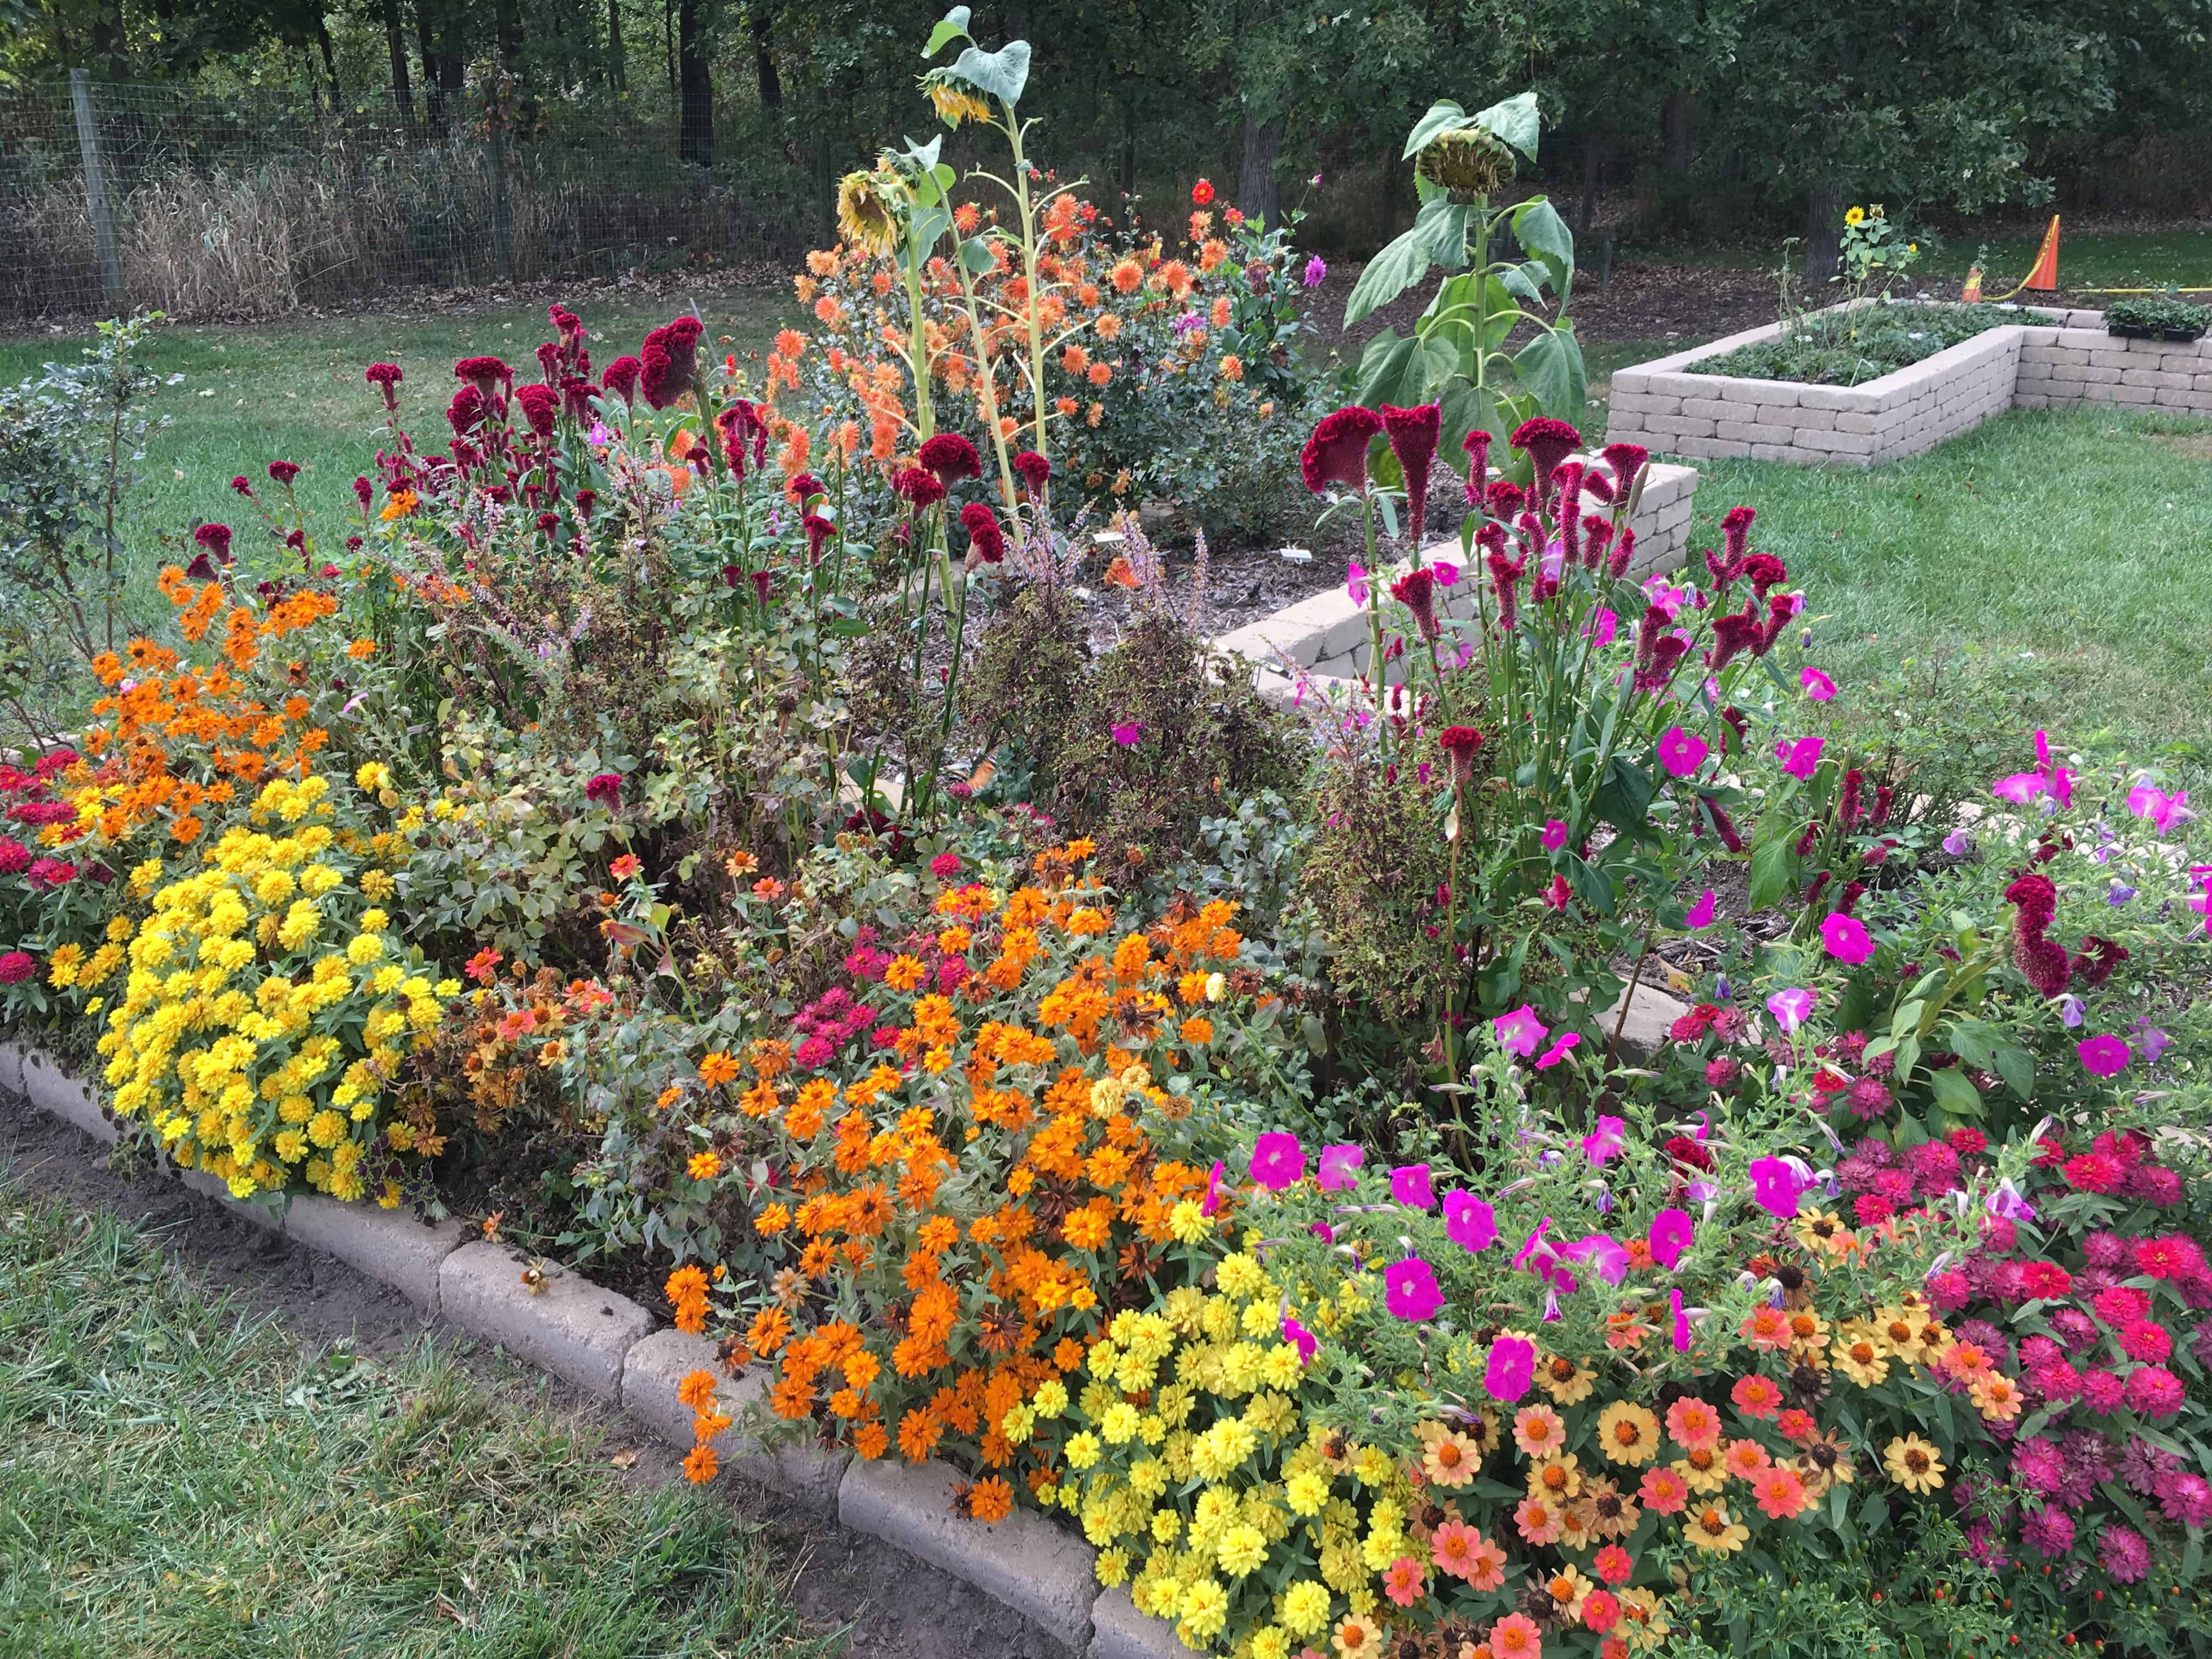 Rose Garden at Gabis Arboretum in Valparaiso, Indiana